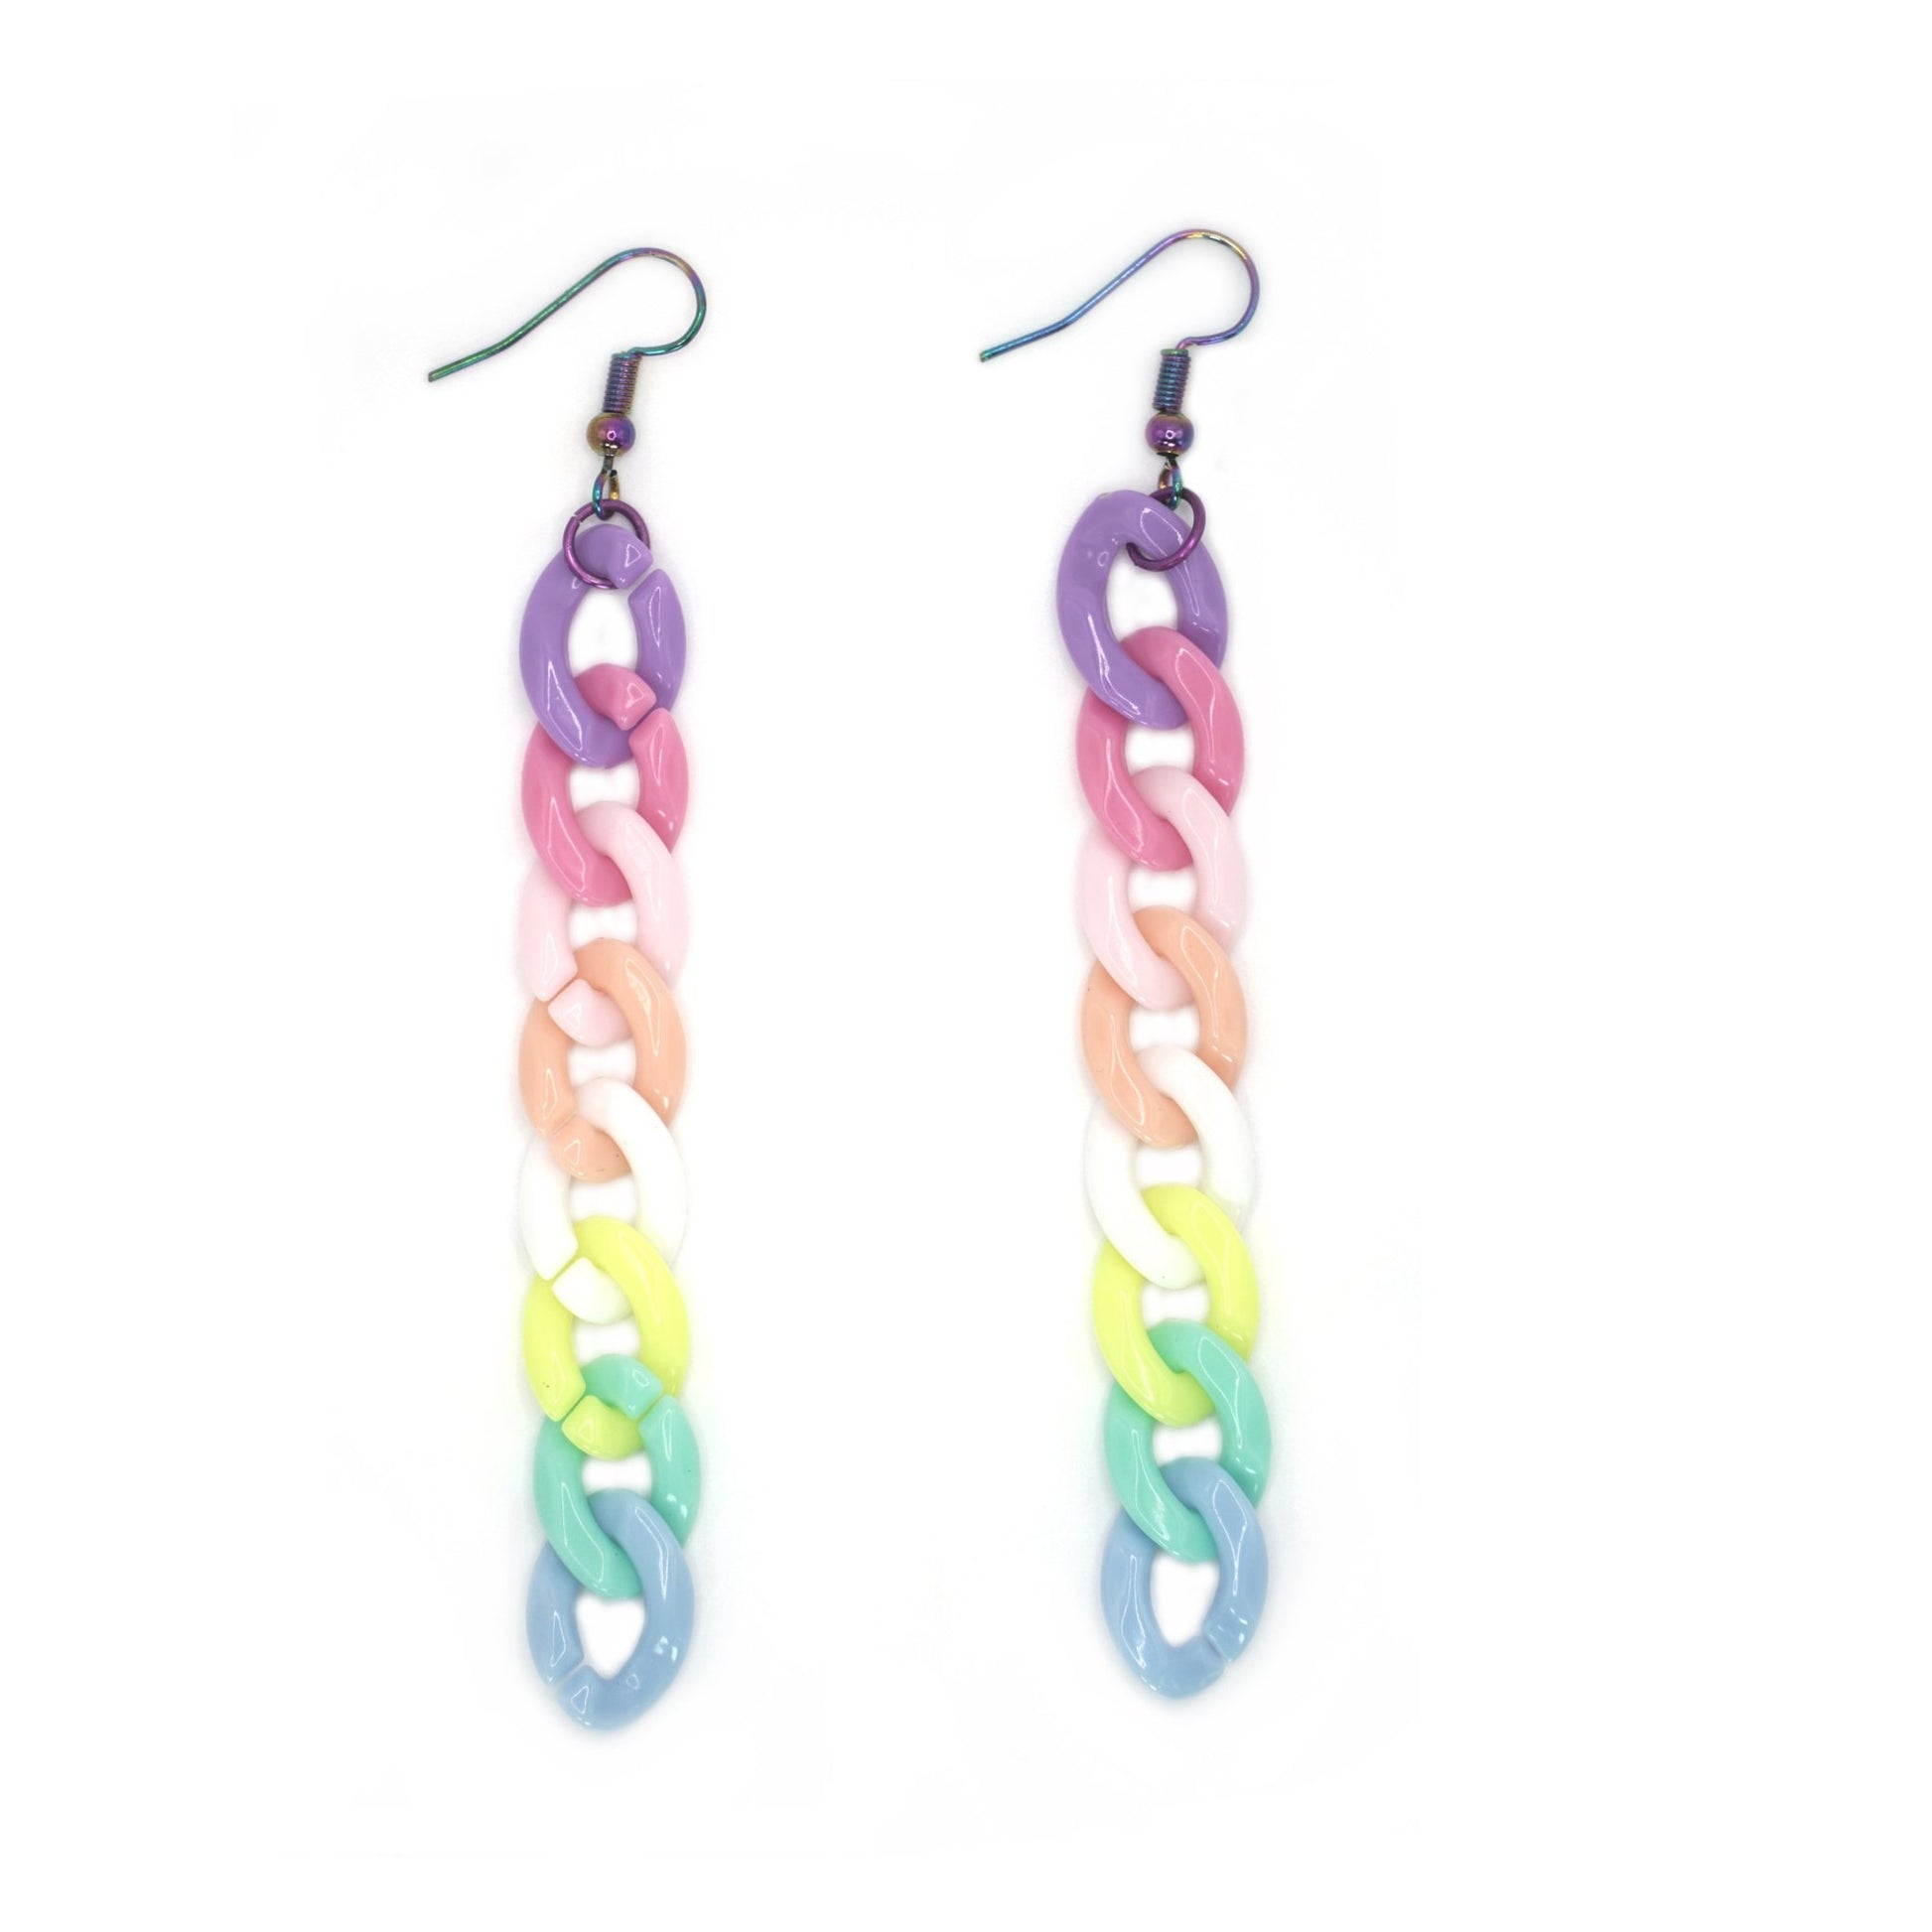 Rainbowcore Pastel Earrings, Chain Drop Earrings, LGBTQ Pride Jewelry - Dekowaii Jewelry Company